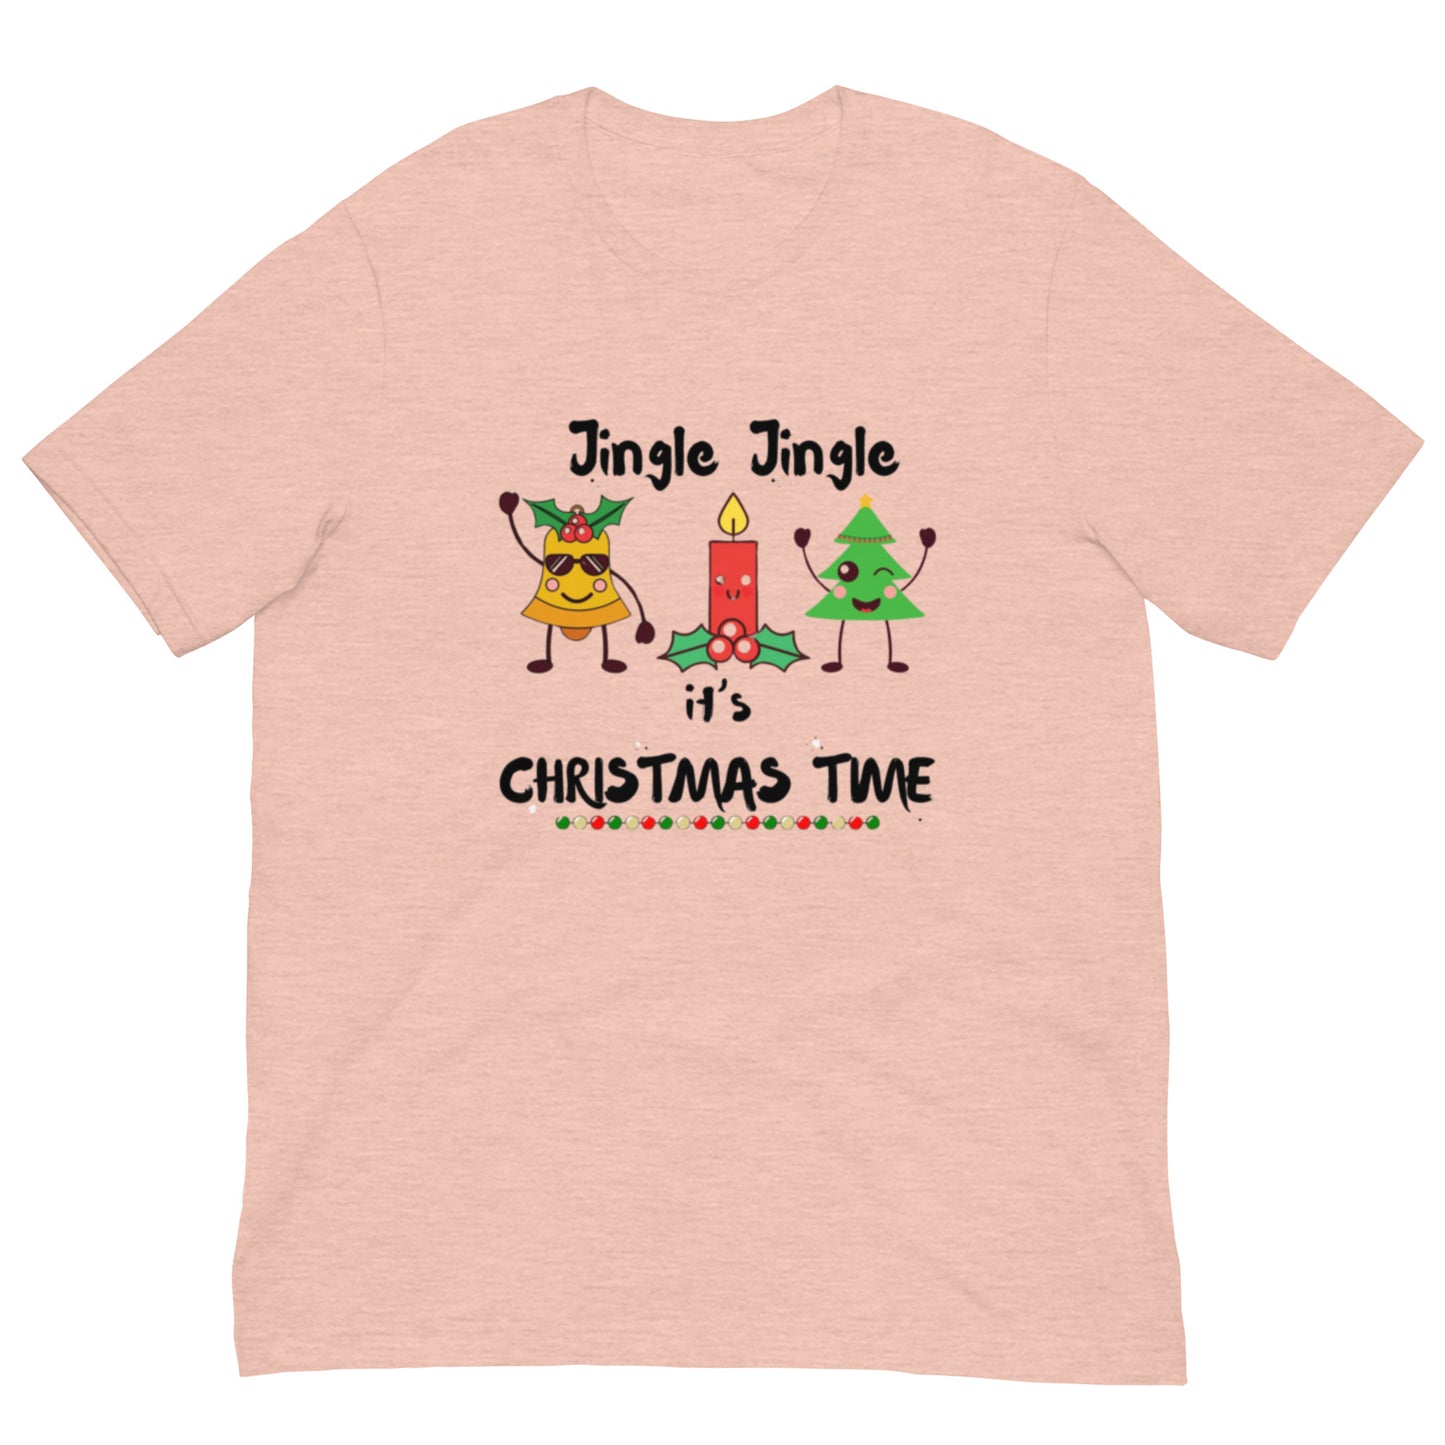 Jingle Jingle Unisex t-shirt